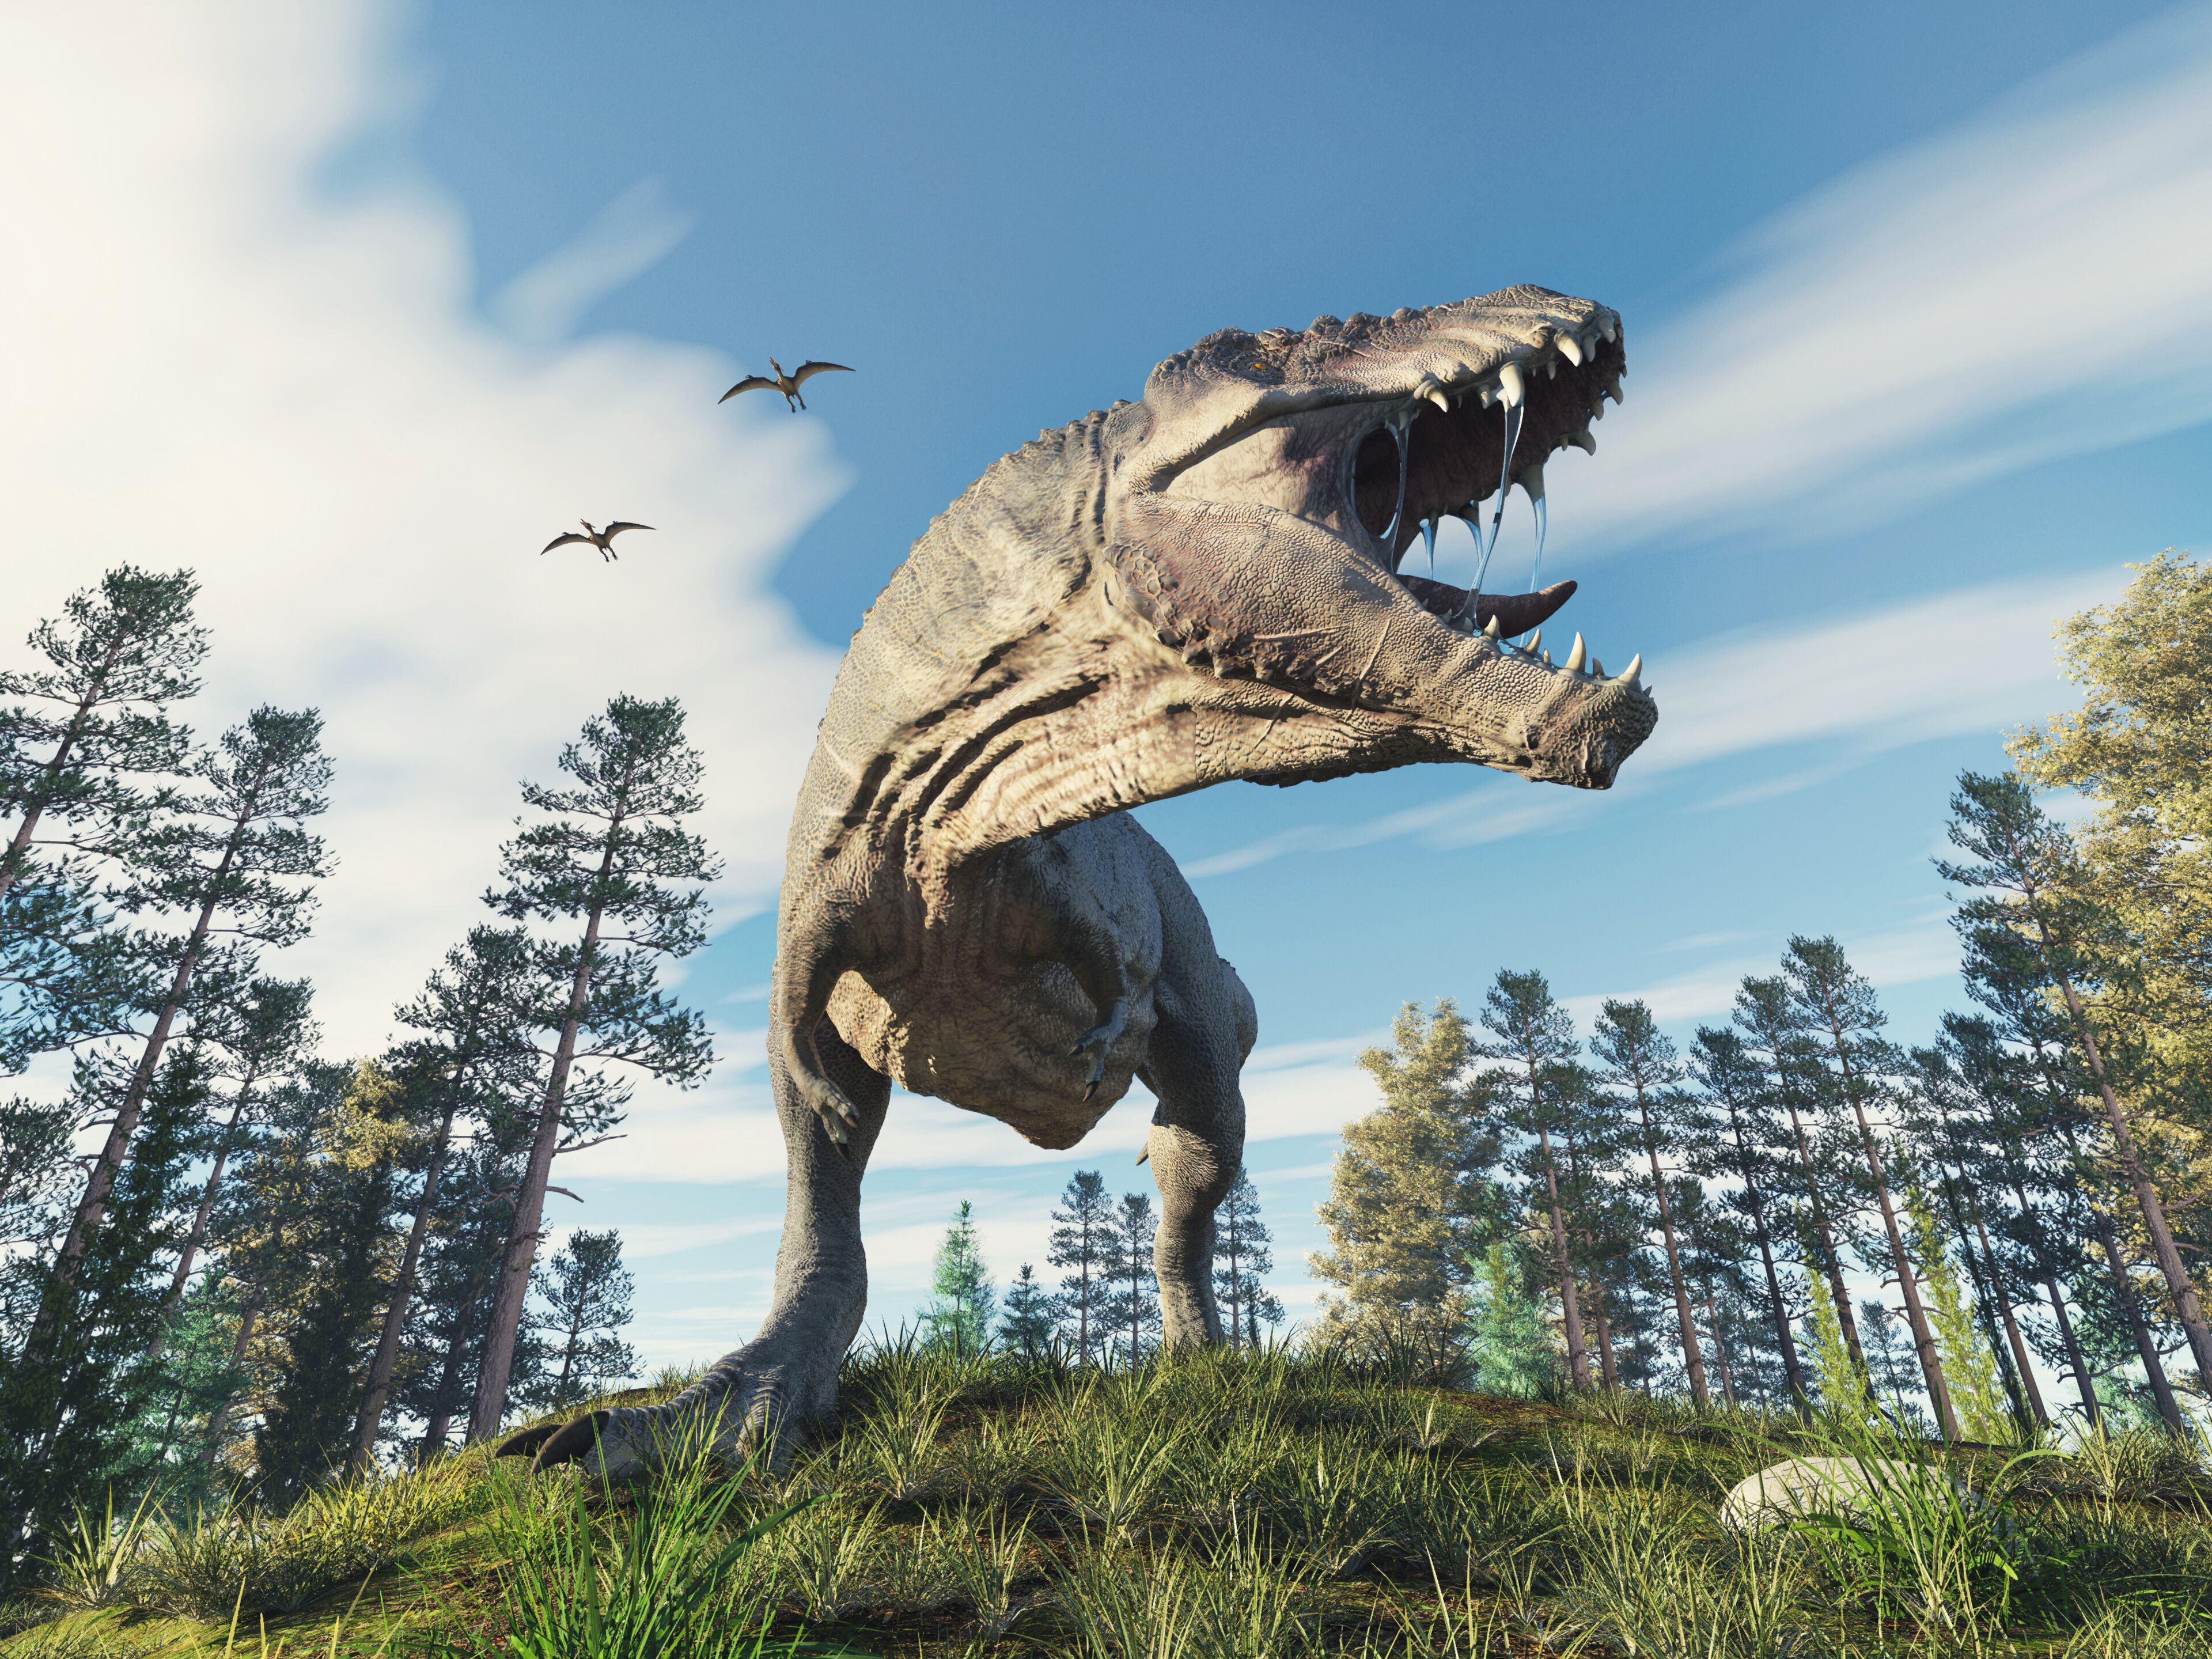 Représentation réaliste d'un Tyrannosaurus Rex rugissant au milieu d'une forêt luxuriante sous un ciel bleu clair, avec des ptérosaures volant au loin.